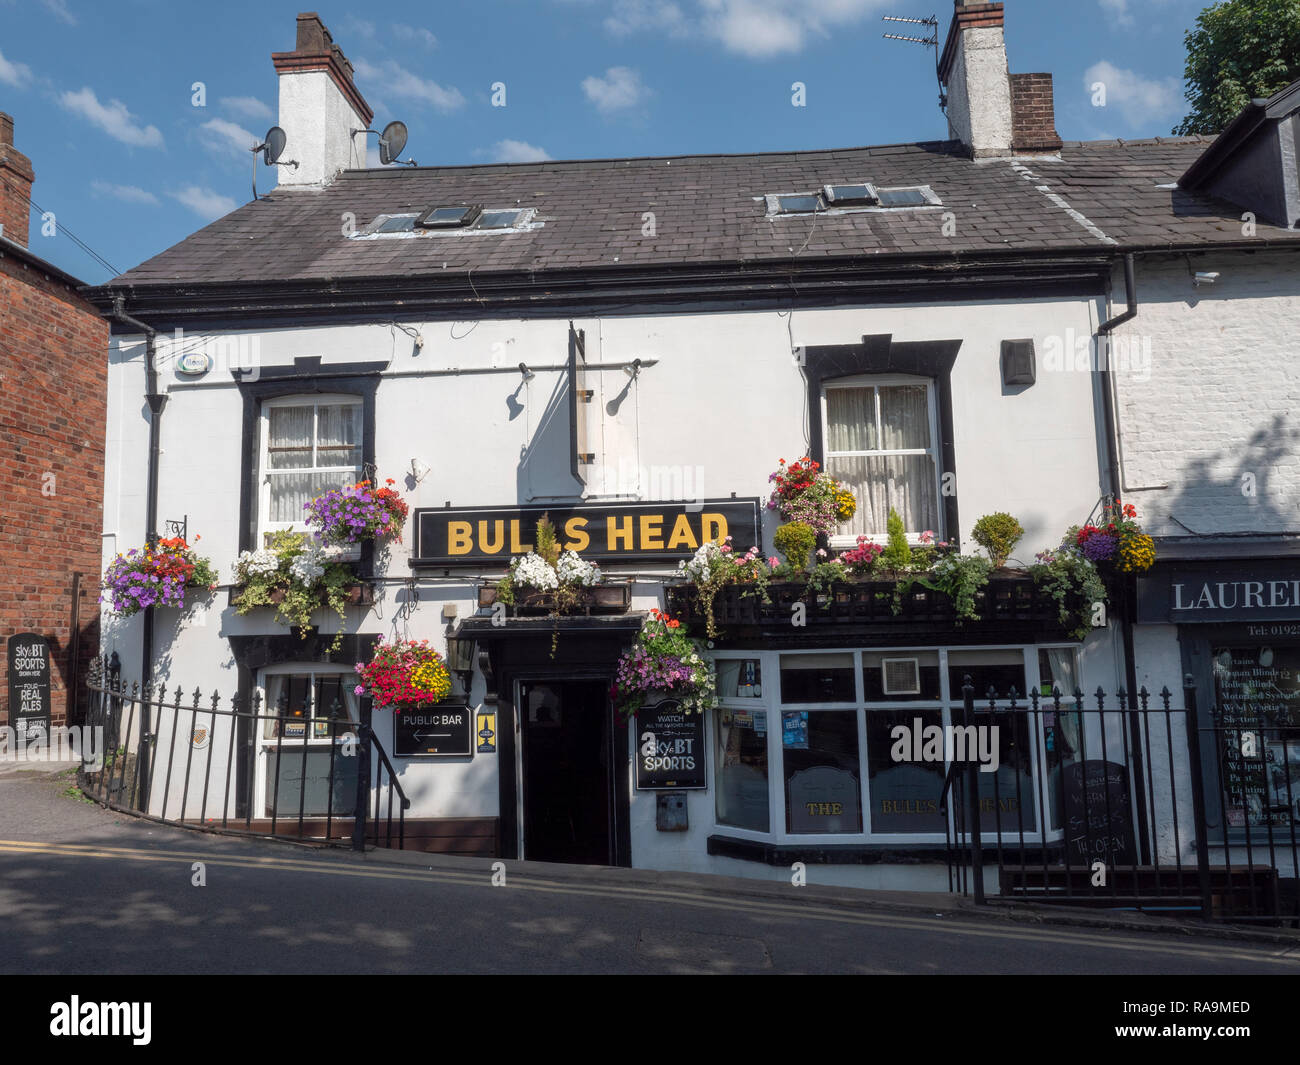 La testa di tori public house, la croce, Lymm, Cheshire, Inghilterra, Regno Unito Foto Stock